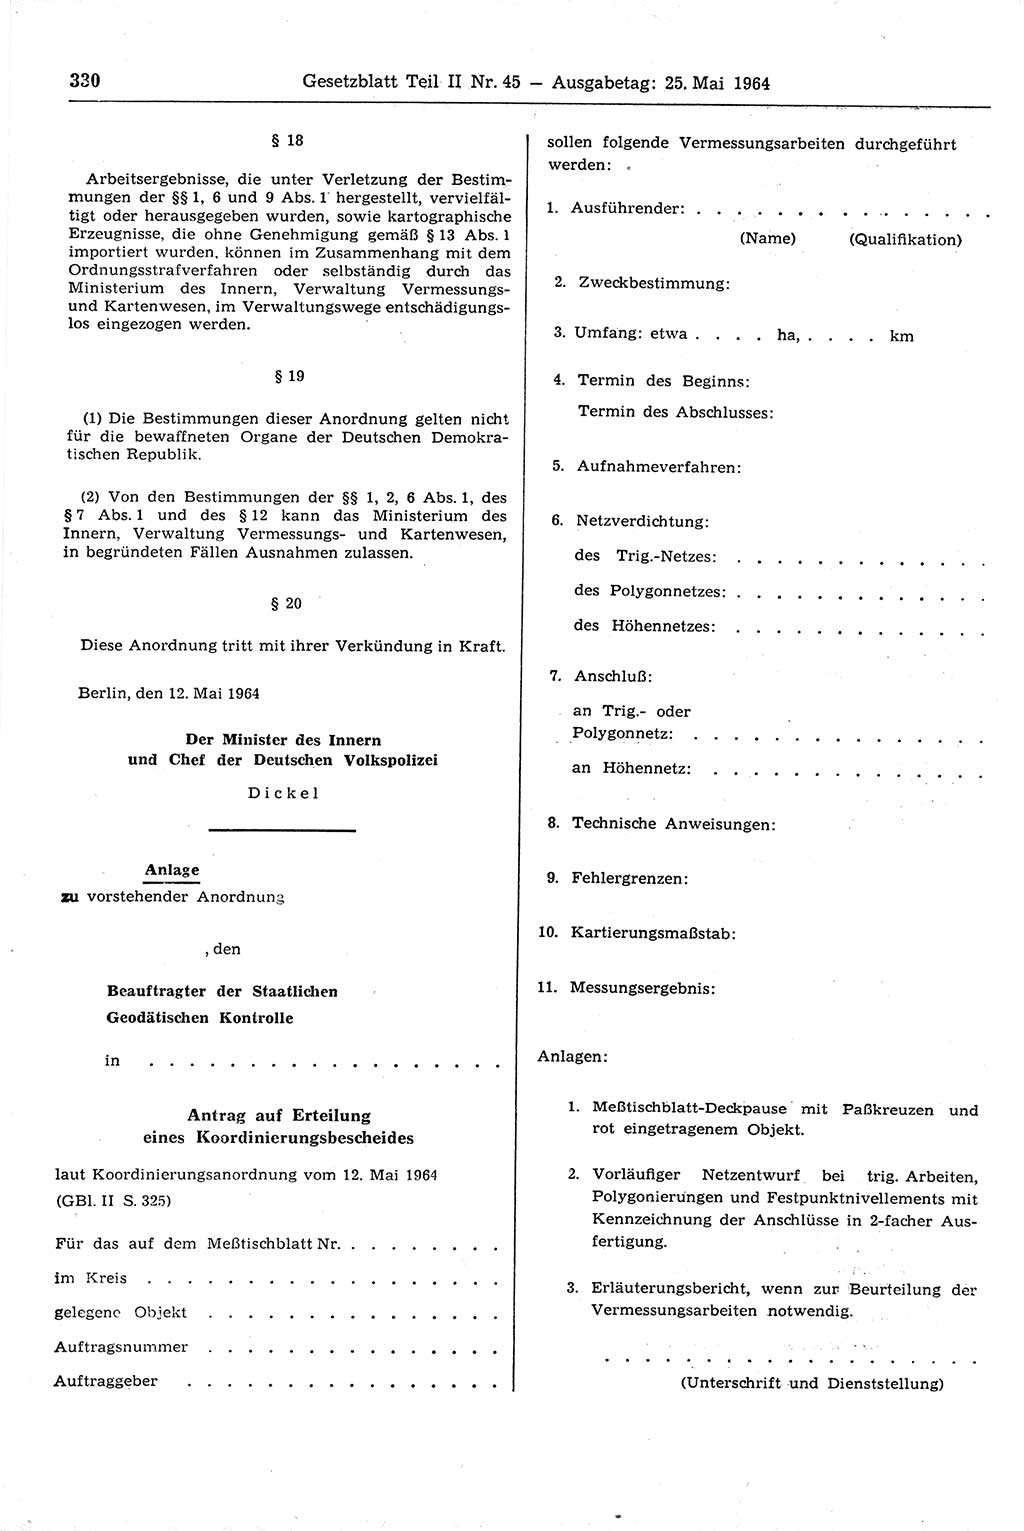 Gesetzblatt (GBl.) der Deutschen Demokratischen Republik (DDR) Teil ⅠⅠ 1964, Seite 330 (GBl. DDR ⅠⅠ 1964, S. 330)